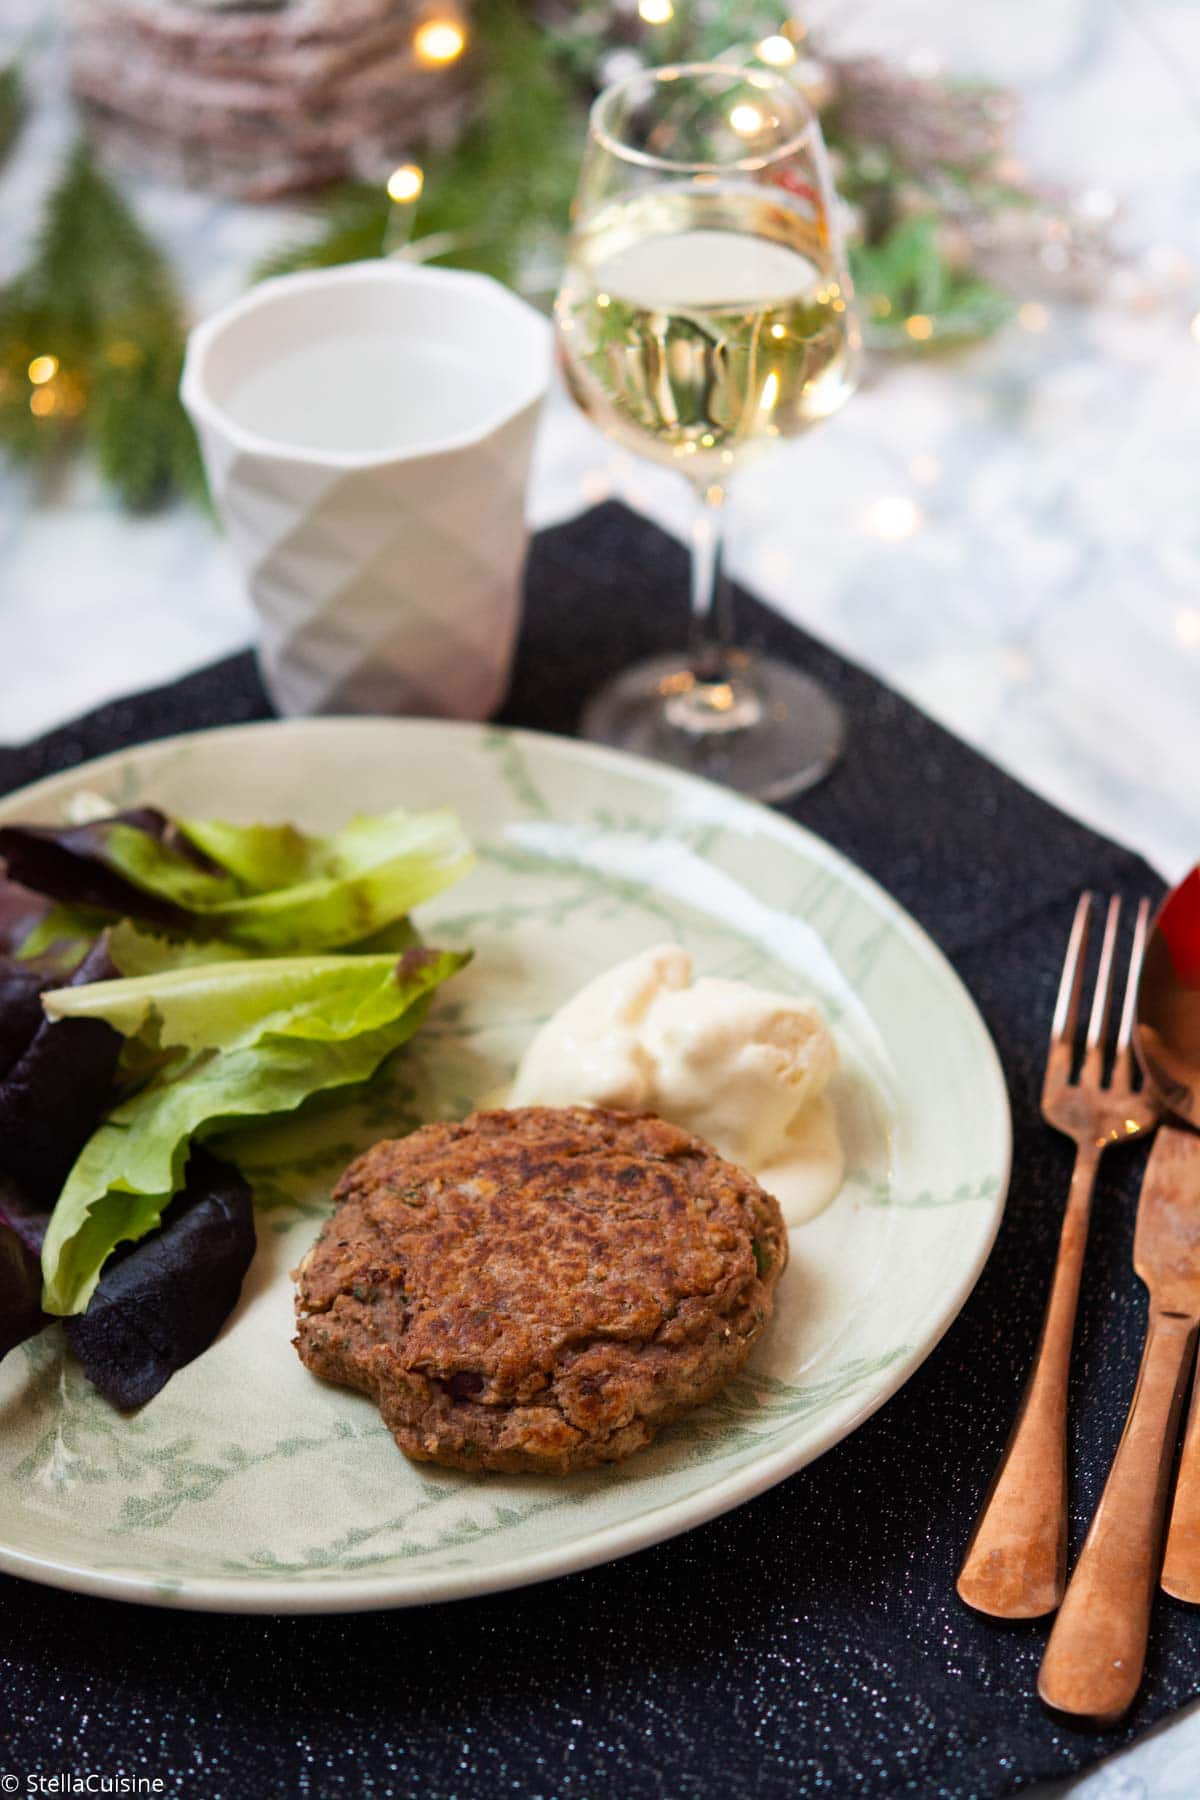 Recette de Noël végétarien : steak veggie et glace moutarde